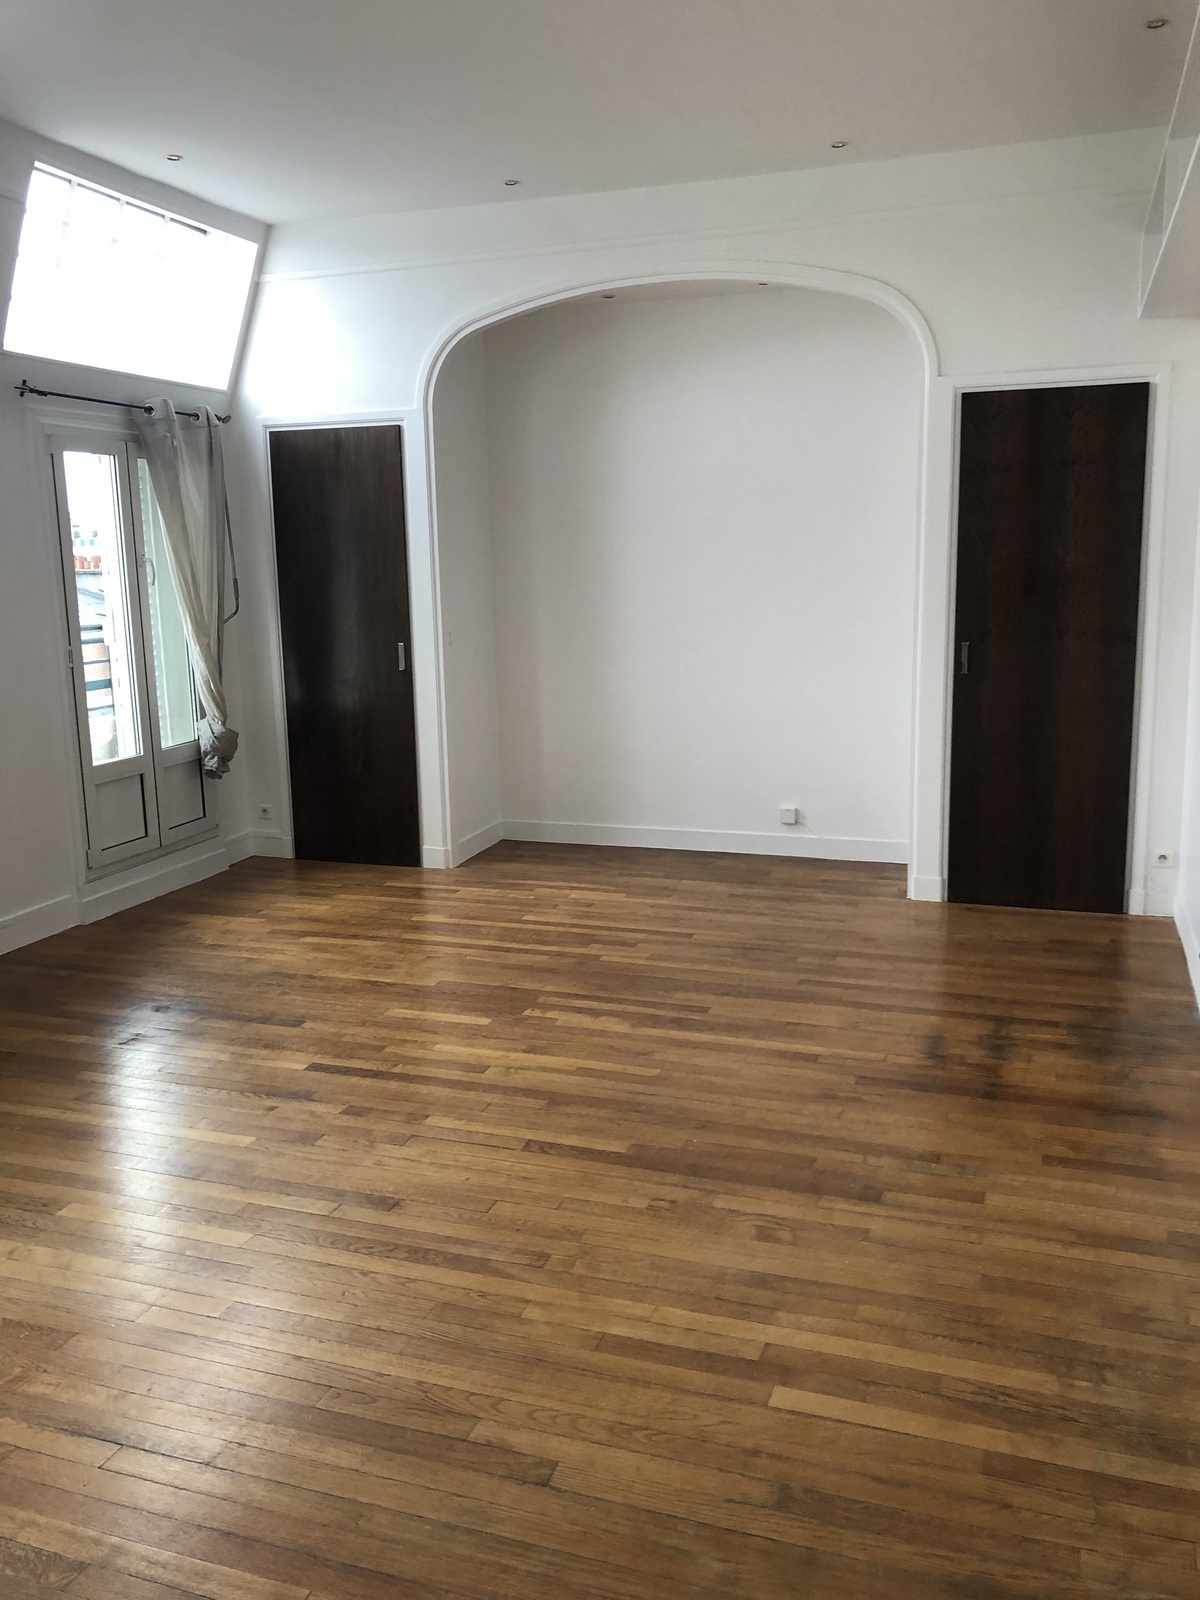 Appartement 80m²|Peinture complette , salon , cuisine , salle de bain , chambre ,chambre et dressing 
à Paris 75015 , budget 7500€ .